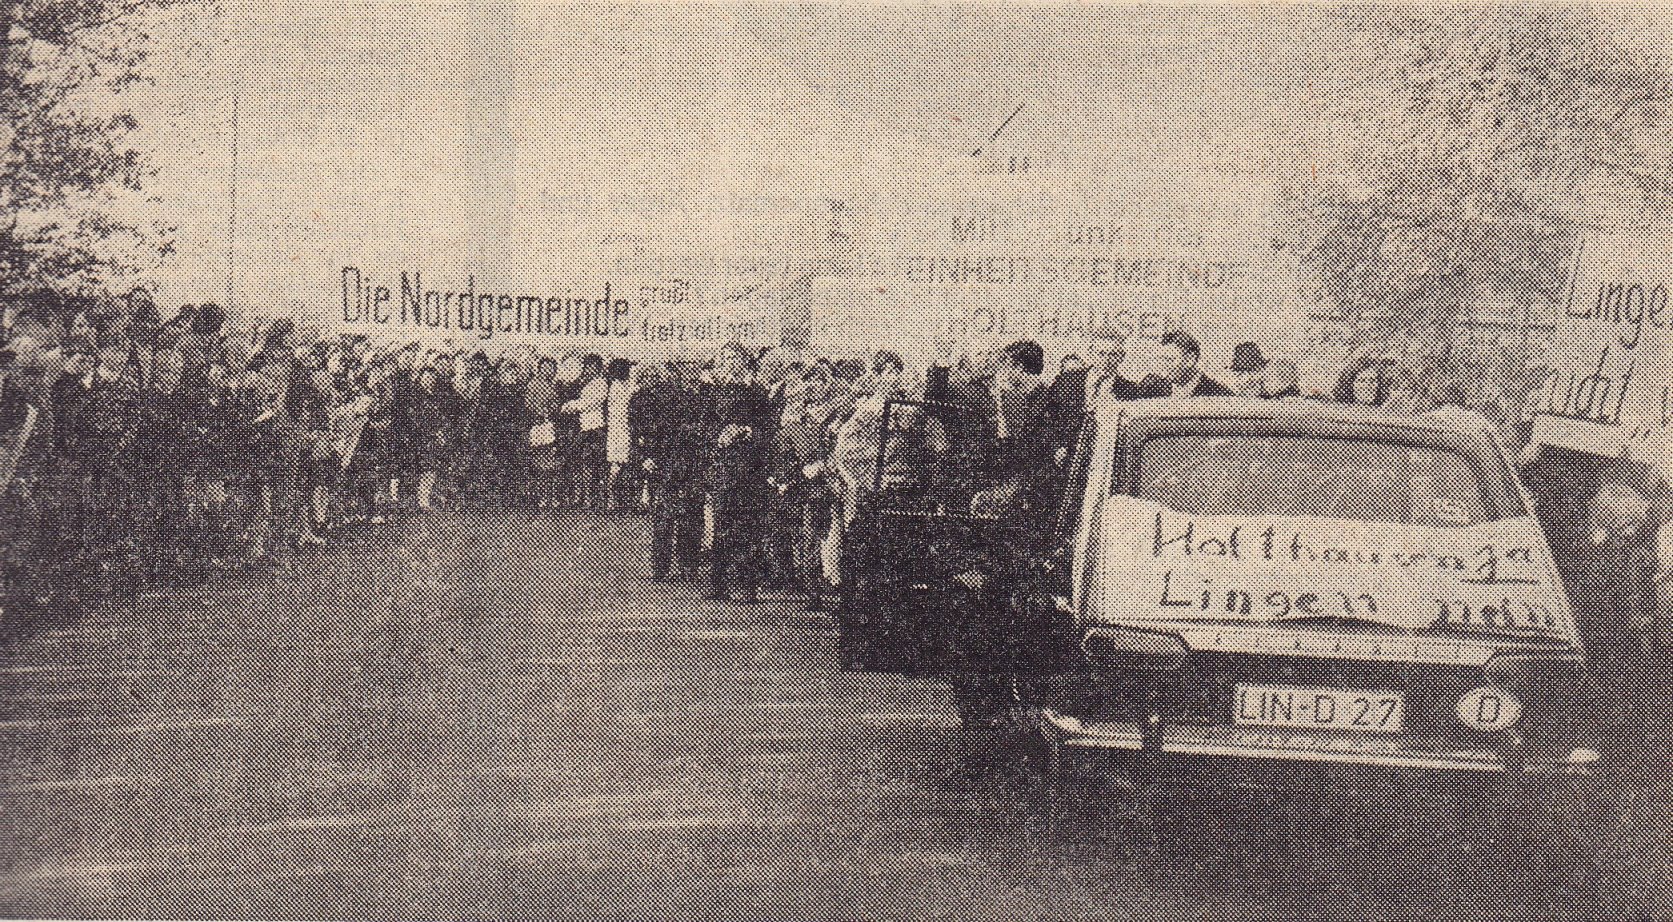 „Holthausen ja, Lingen nein“. Demonstration in Brögbern für die „Nordgemeinde“ Ende Oktober 1971. (Lingener Tagespost vom 28. Oktober 1971)